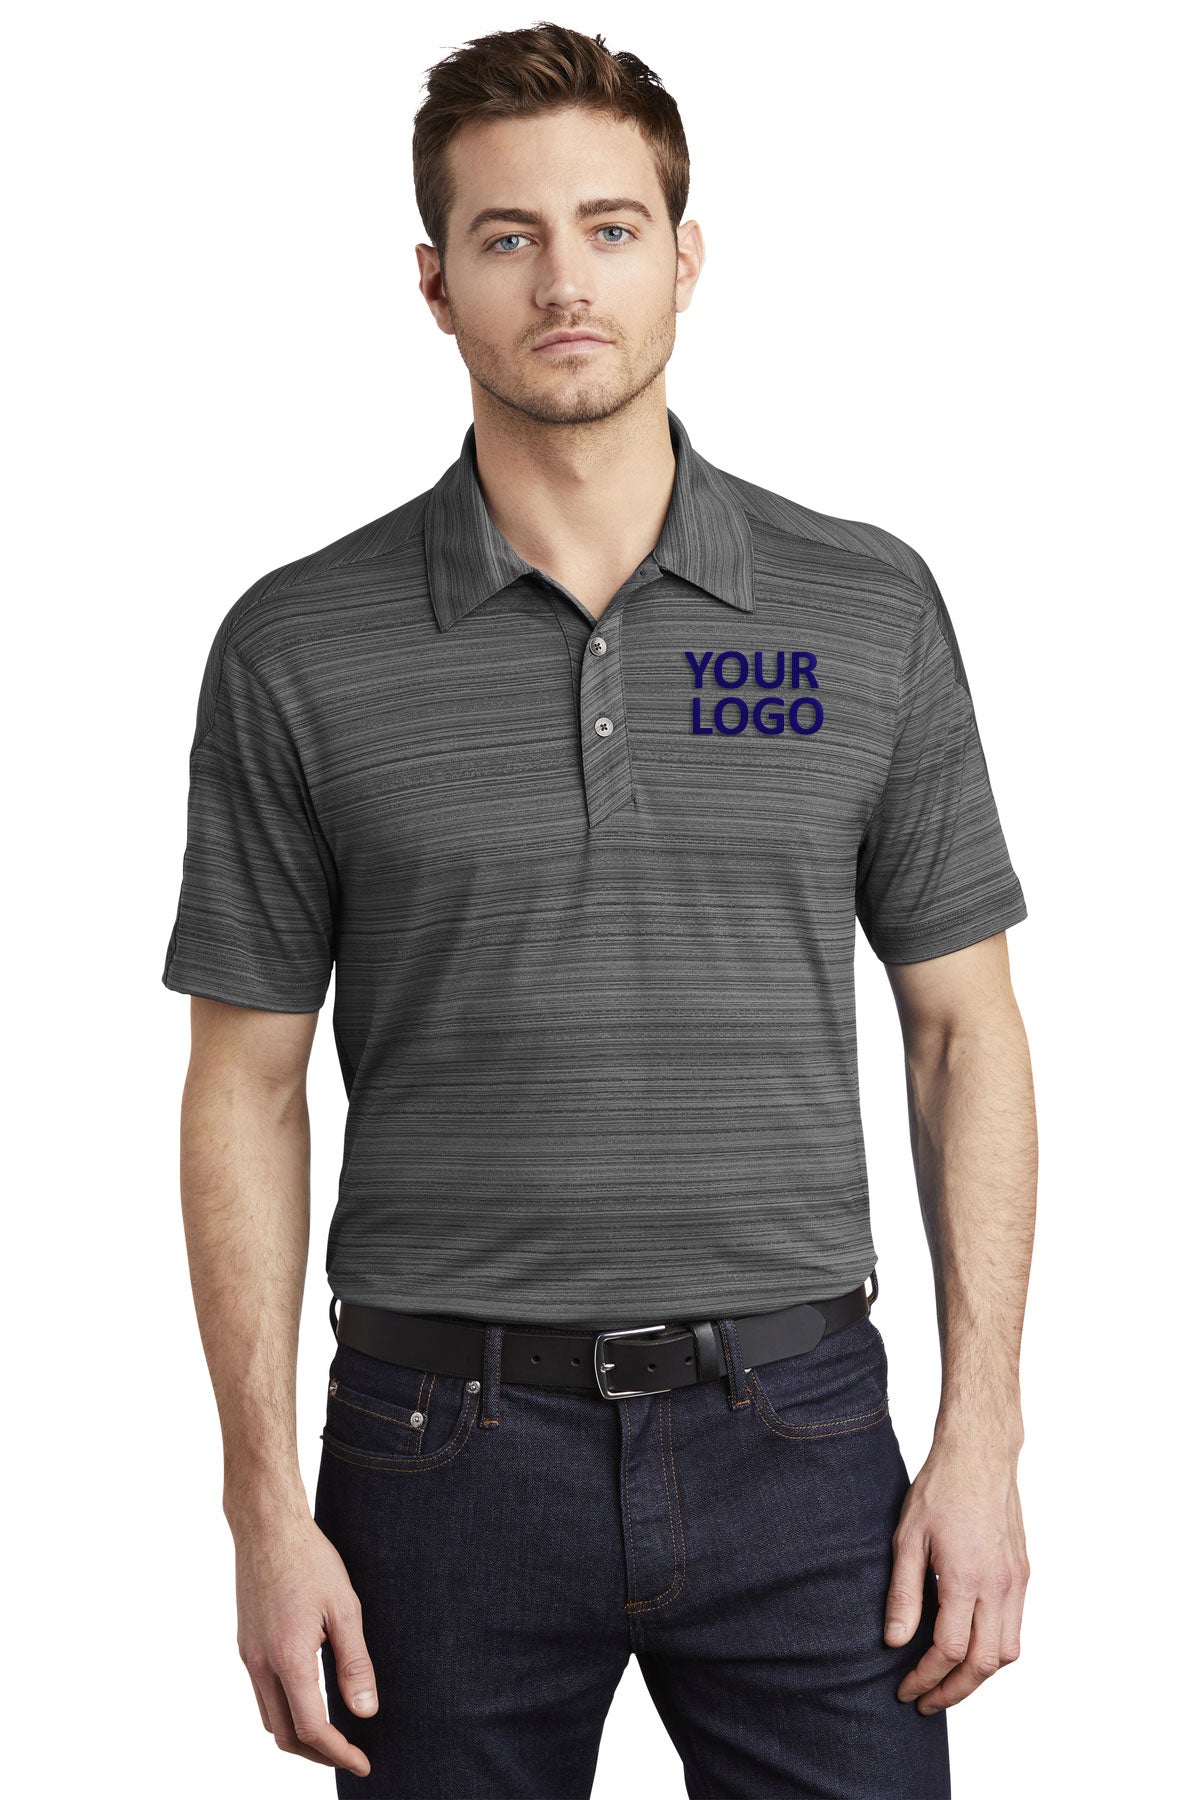 OGIO Petrol Grey OG116 work polo shirts with logo